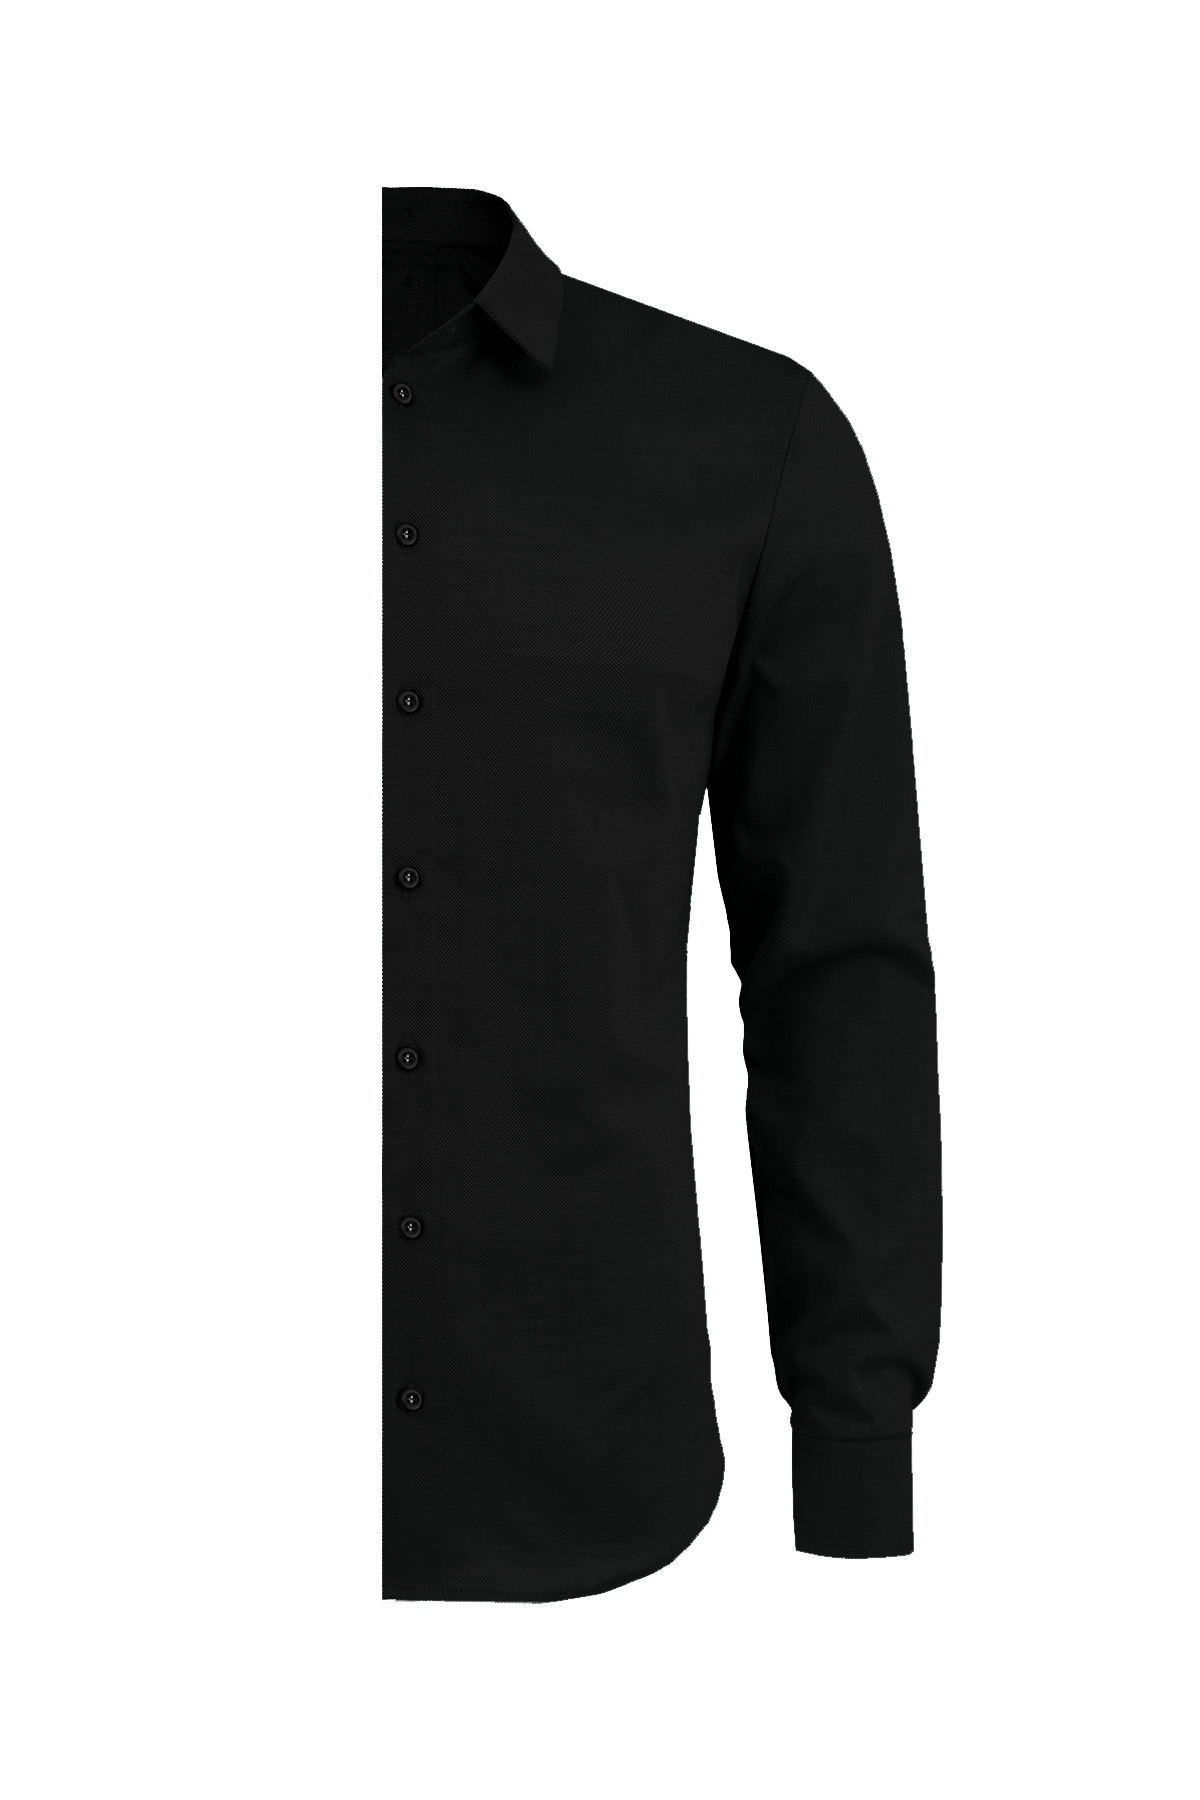 black slim fit shirt – left